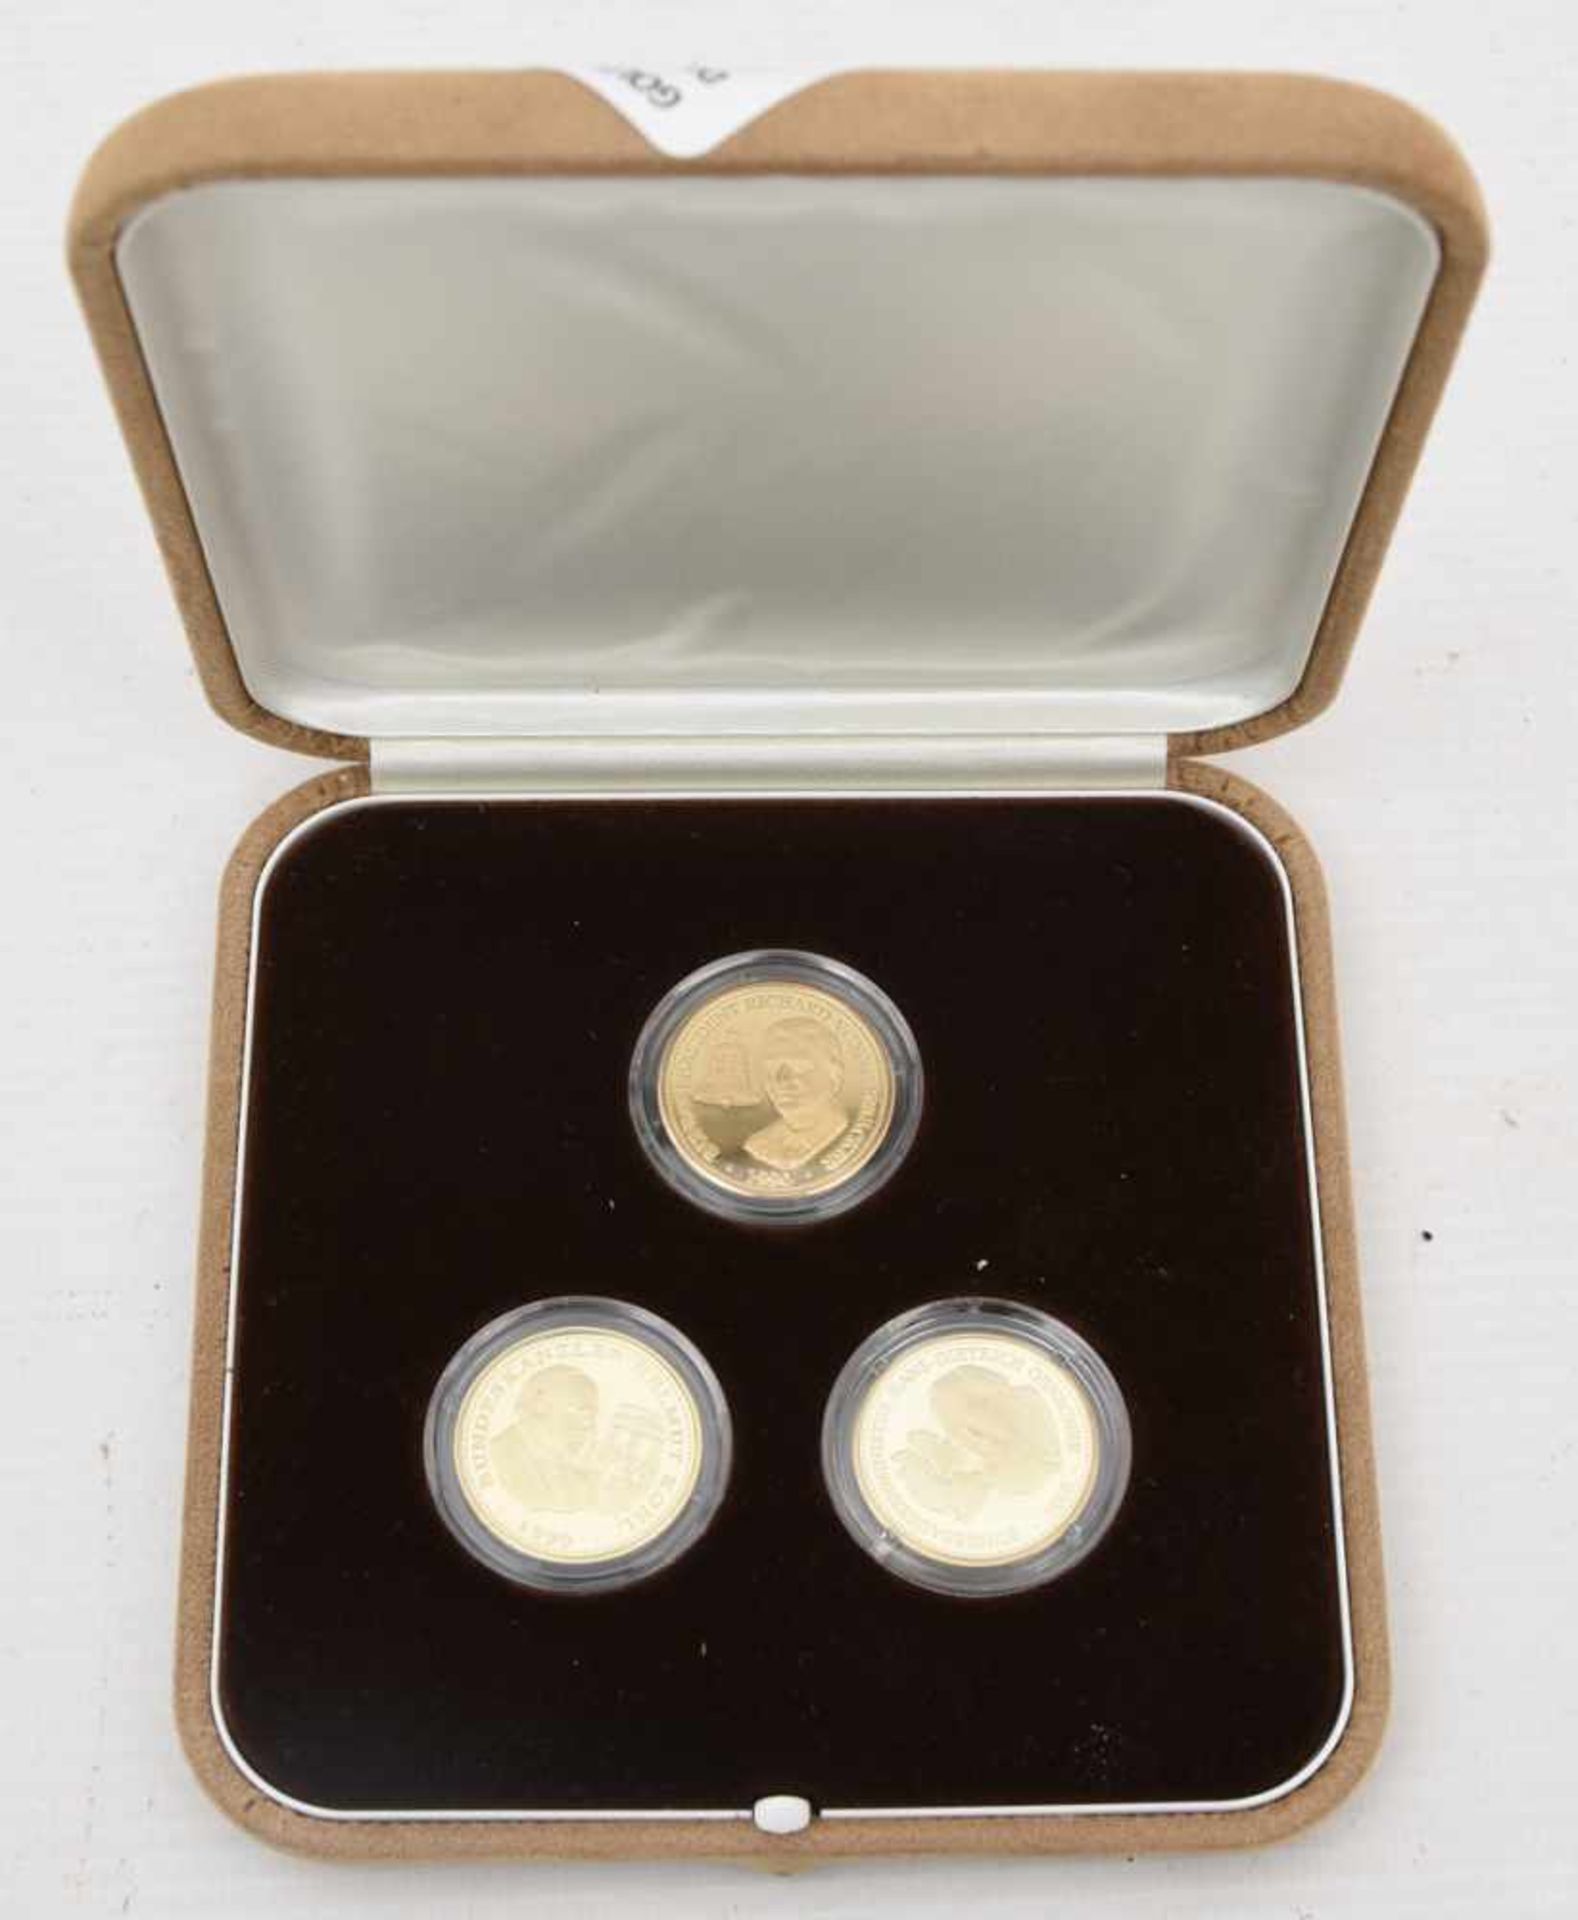 GOLDMÜNZEN, 3 Gedenkmünzen, 14 Karat, Deutschland, 1995 (15)Gedenkmünzen geprägt mit dem